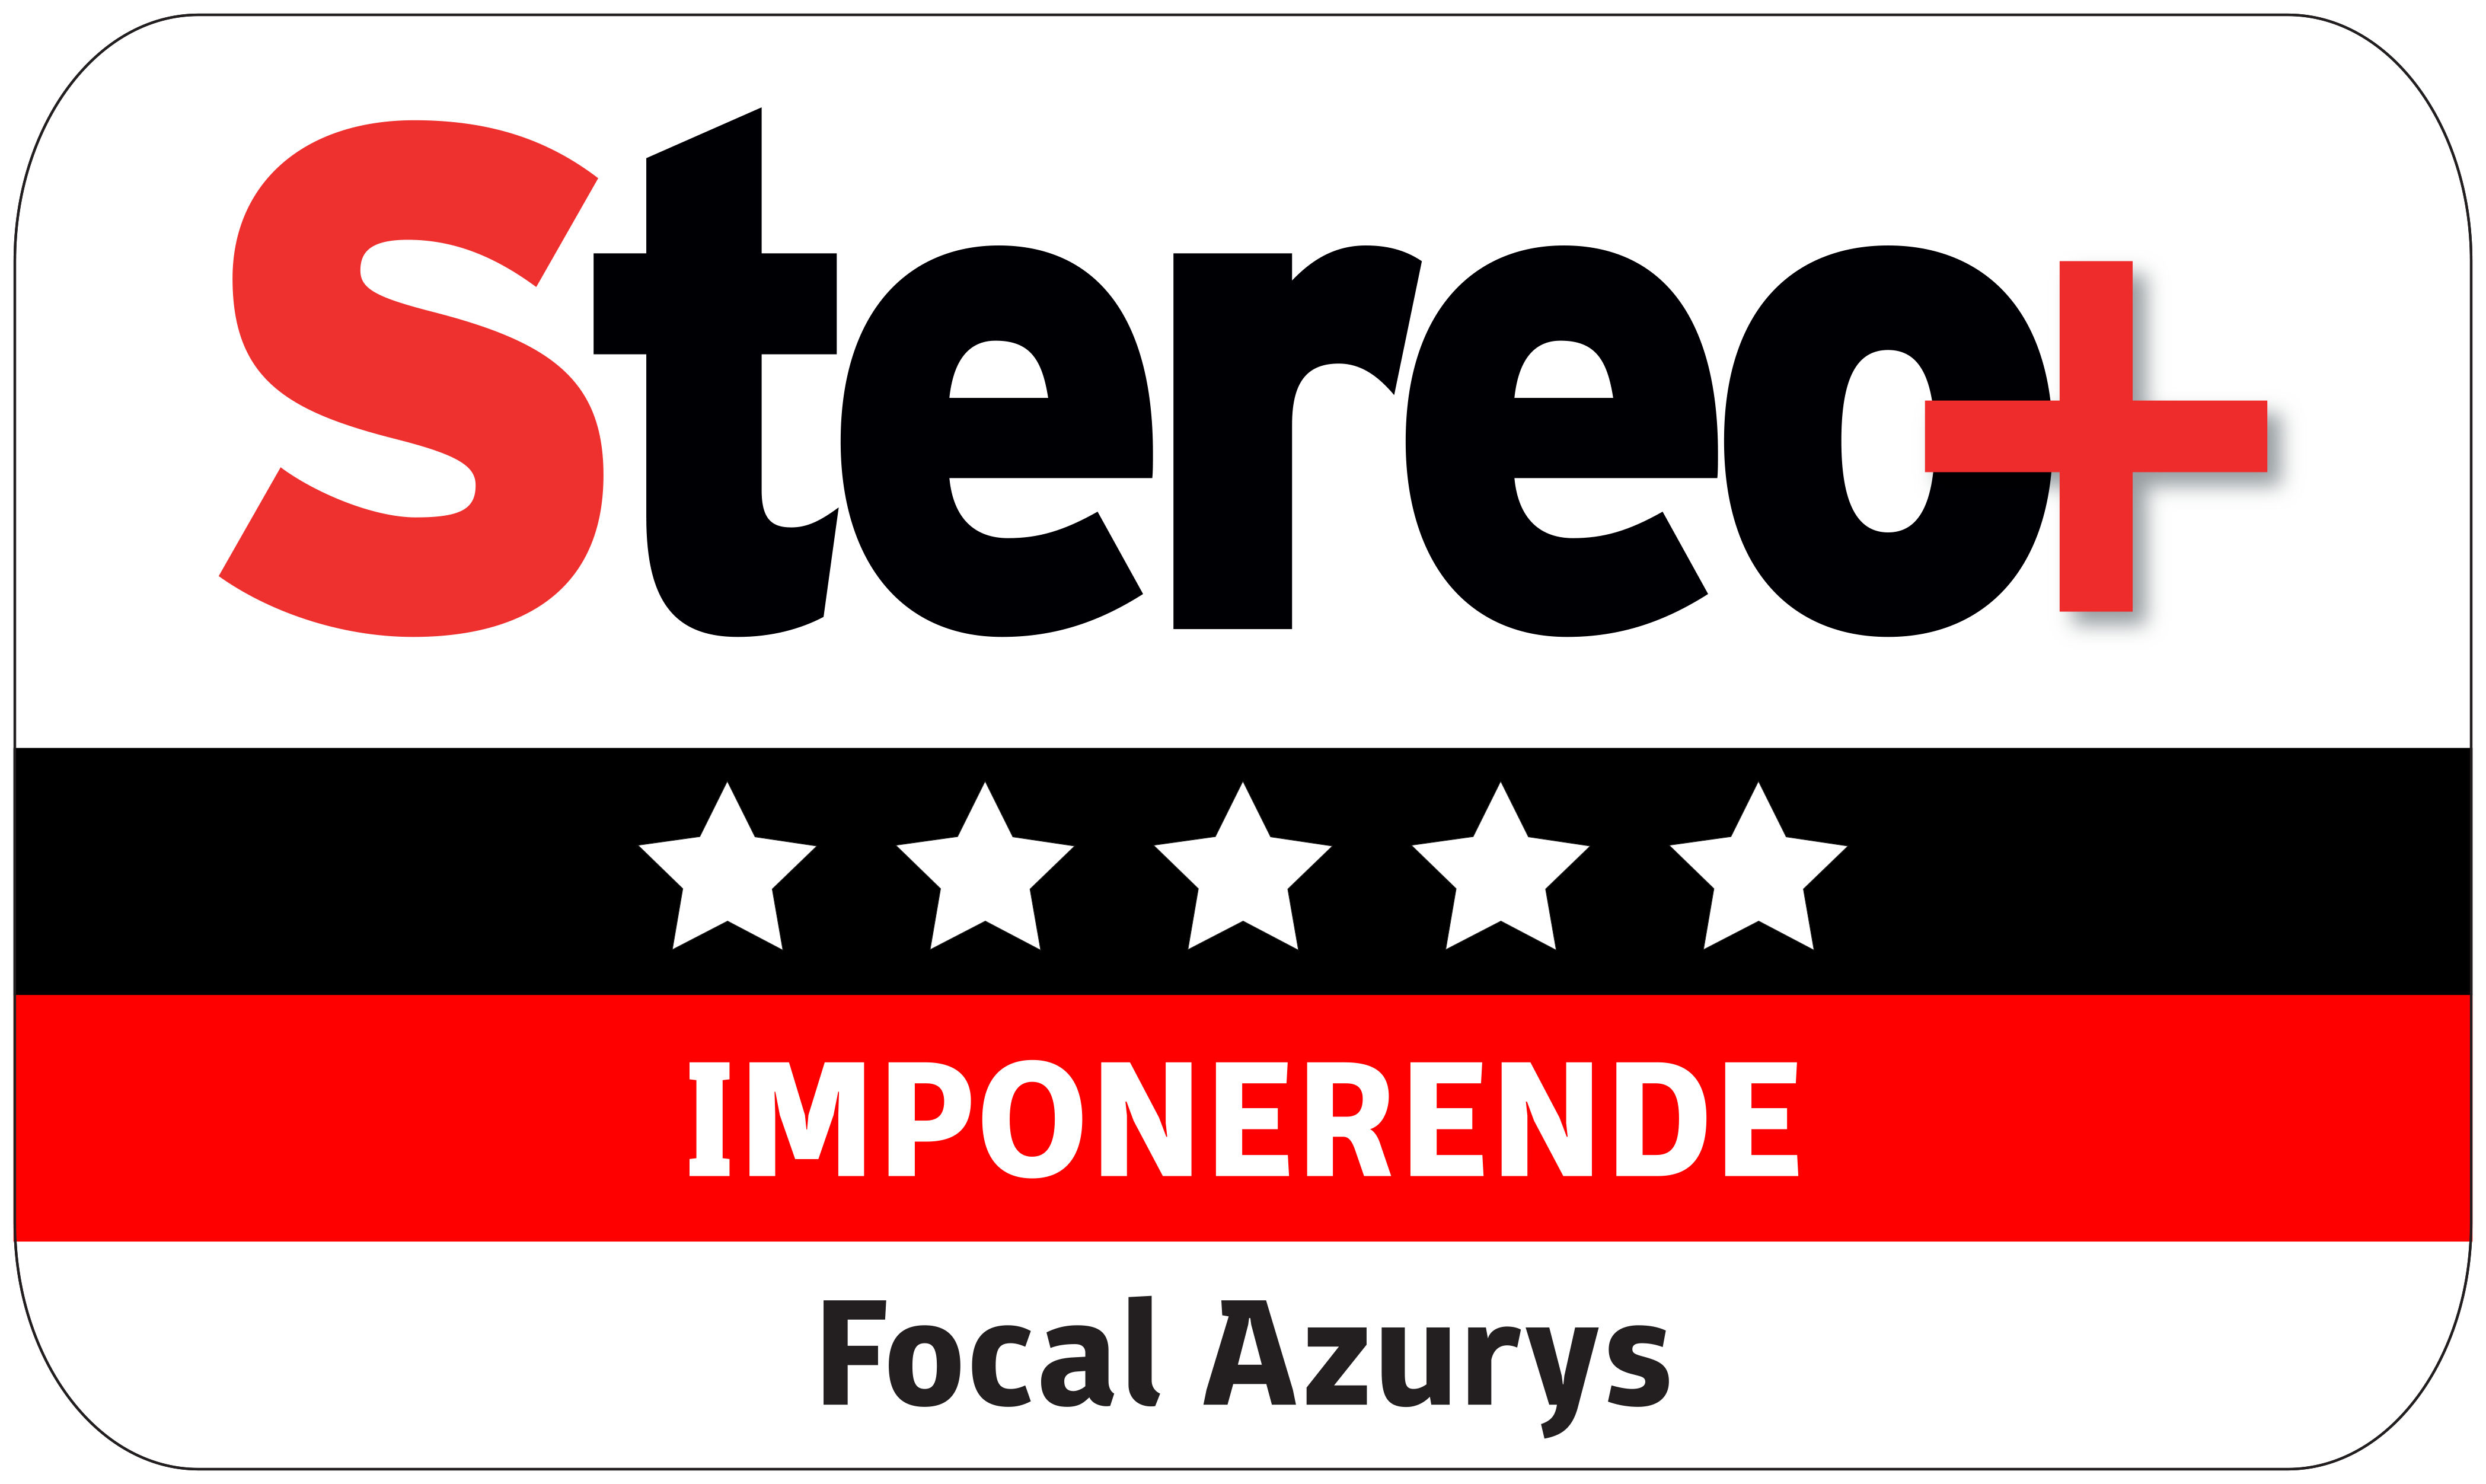 Focal Azurys - Stereopluss